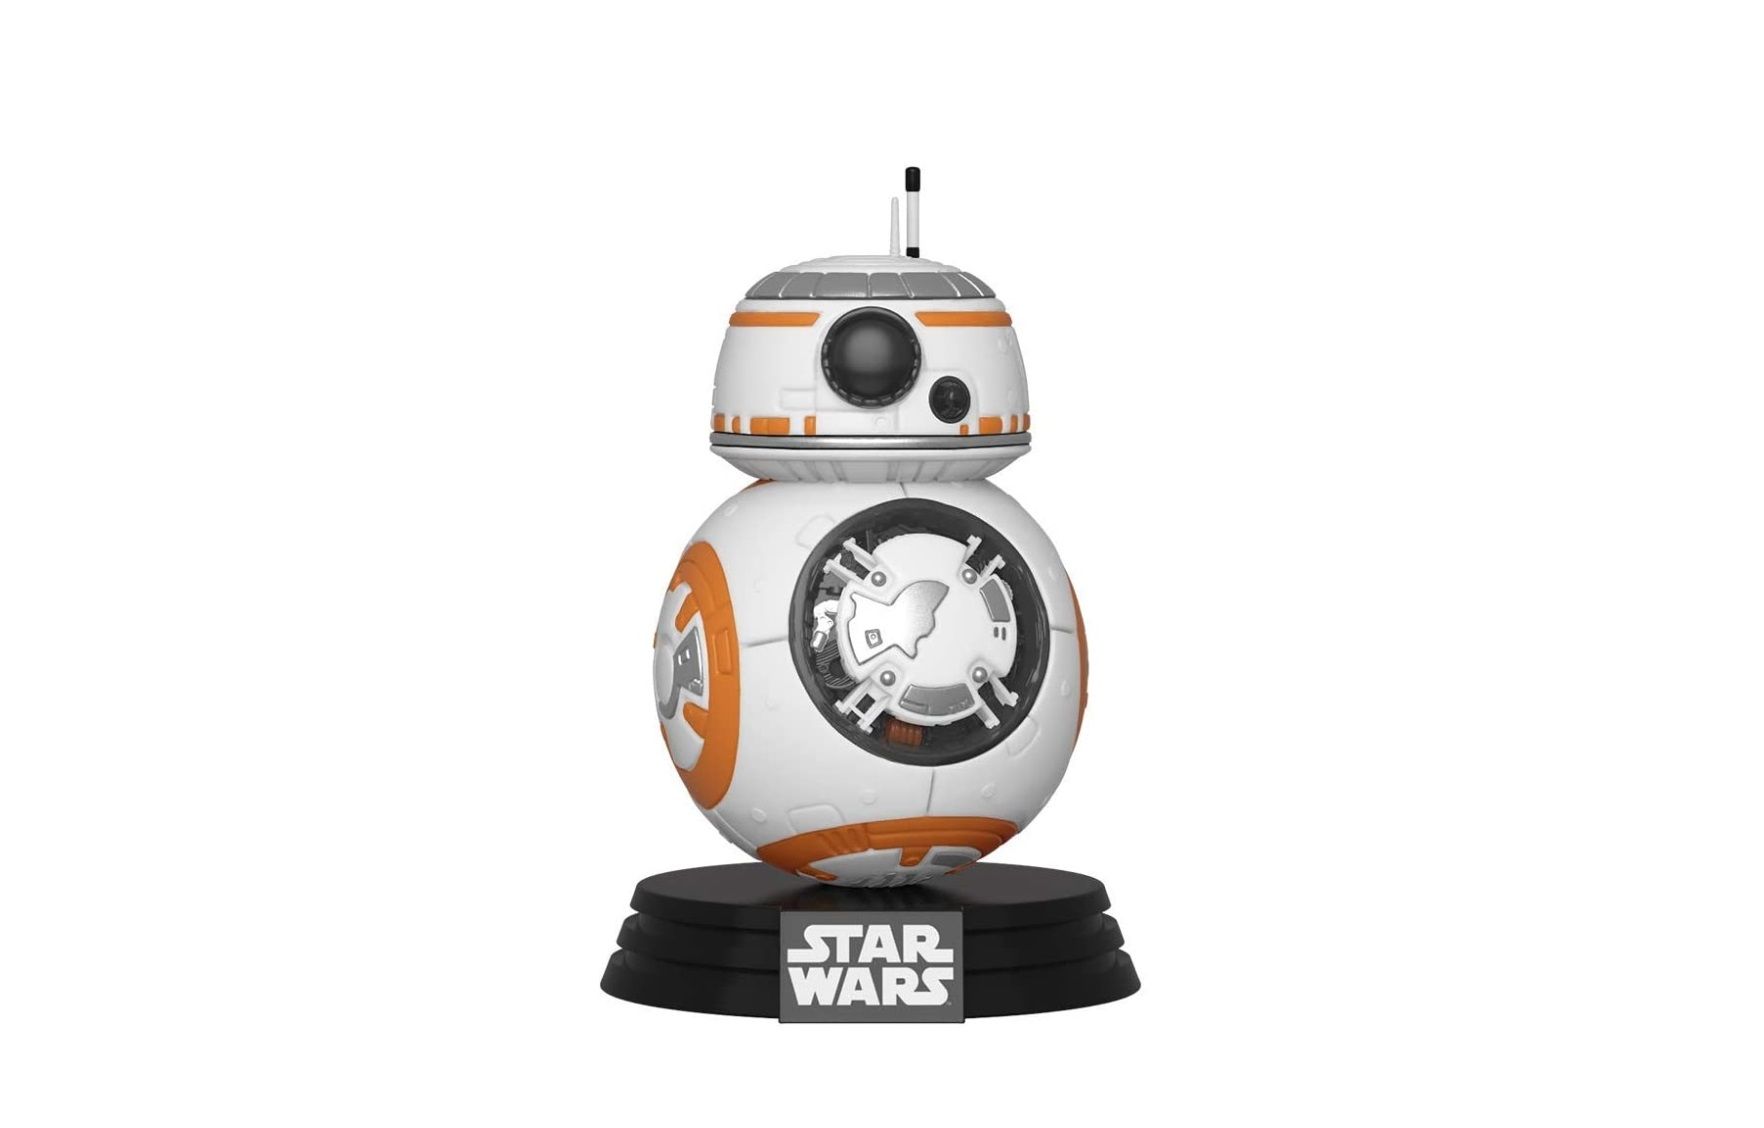 ¡Chollo! Funko Pop Rise of Skywalker BB-8 Star Wars por sólo 7,46€ al tramitar el pedido